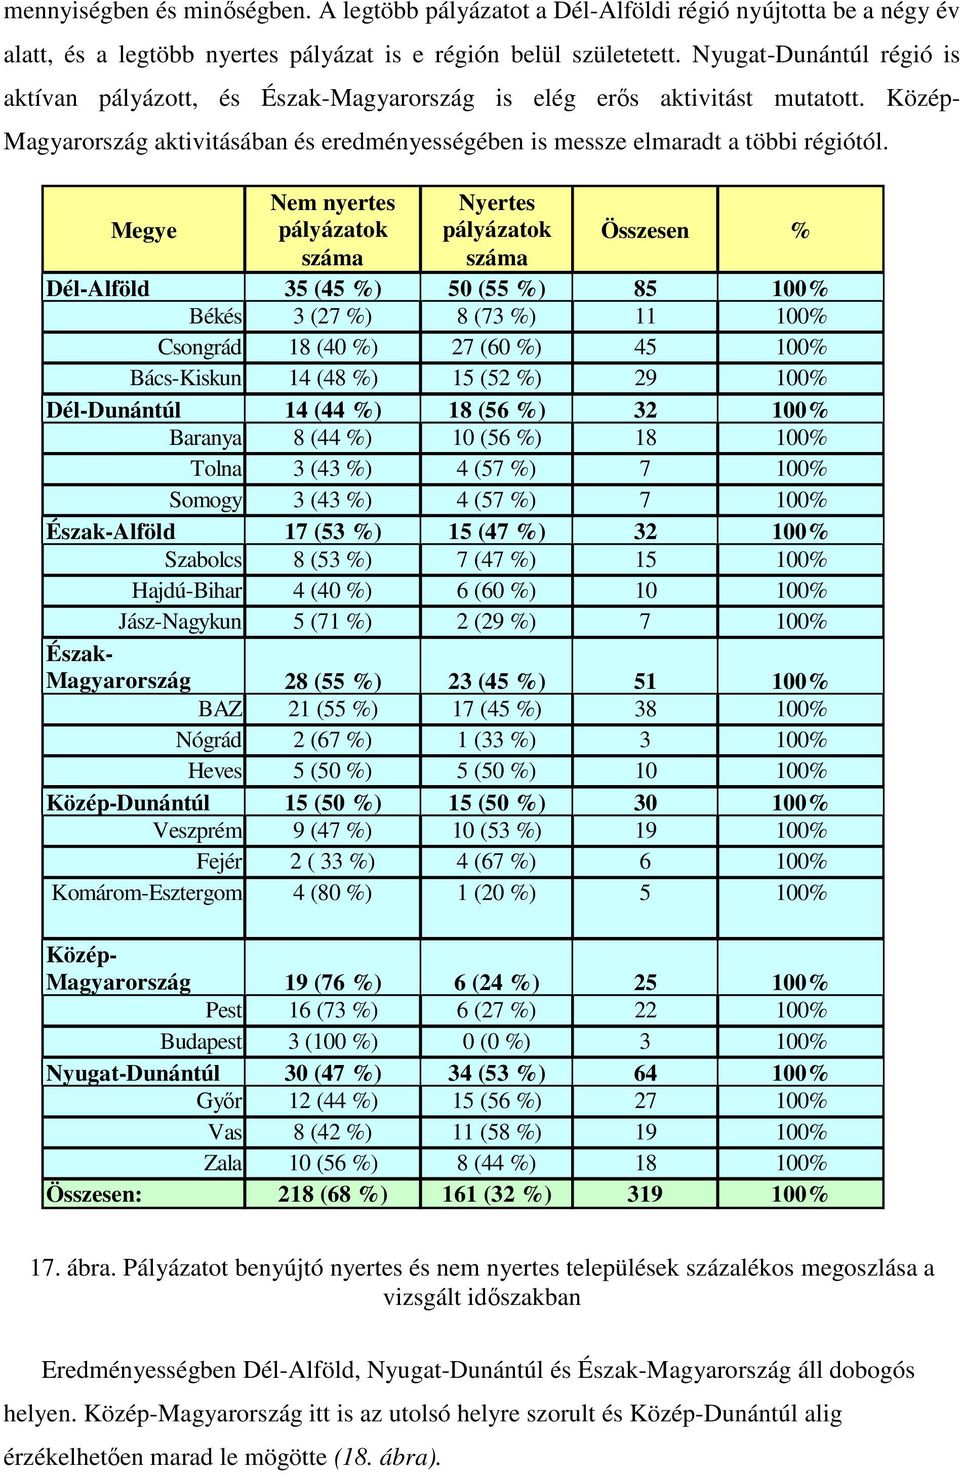 Megye Nem nyertes pályázatok száma Nyertes pályázatok száma Összesen % Dél-Alföld 35 (45 %) 5 (55 %) 85 1% Békés 3 (27 %) 8 (73 %) 11 1% Csongrád 18 (4 %) 27 (6 %) 45 1% Bács-Kiskun 14 (48 %) 15 (52